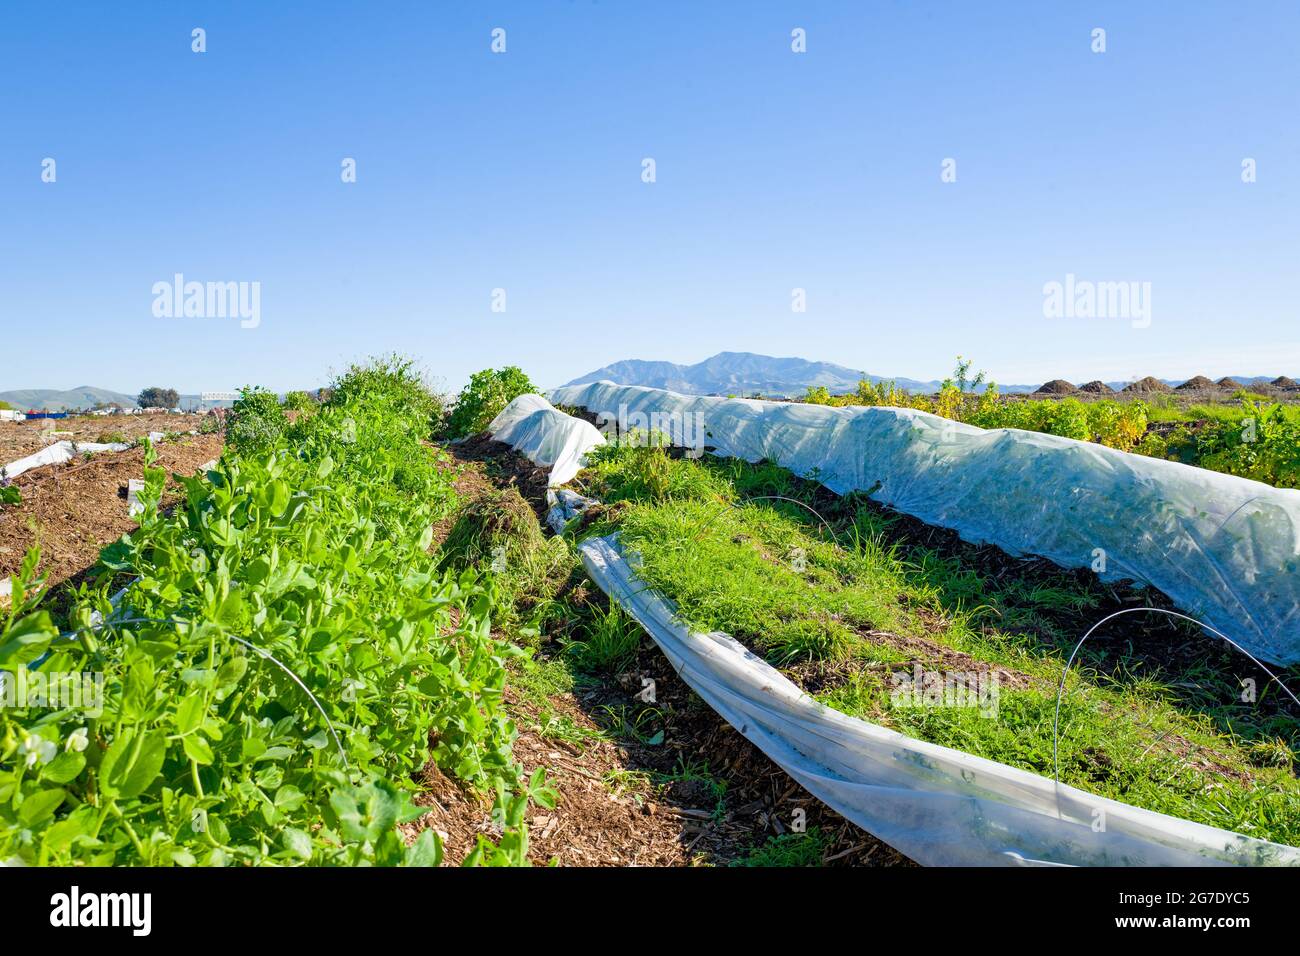 Des plantes et du matériel sont visibles à Coco San Sustainable Farm, une ferme expérimentale qui utilise de l'eau recyclée pour cultiver des plantes pour les écoles locales de Martinez, Californie, le 24 janvier 2019. () Banque D'Images